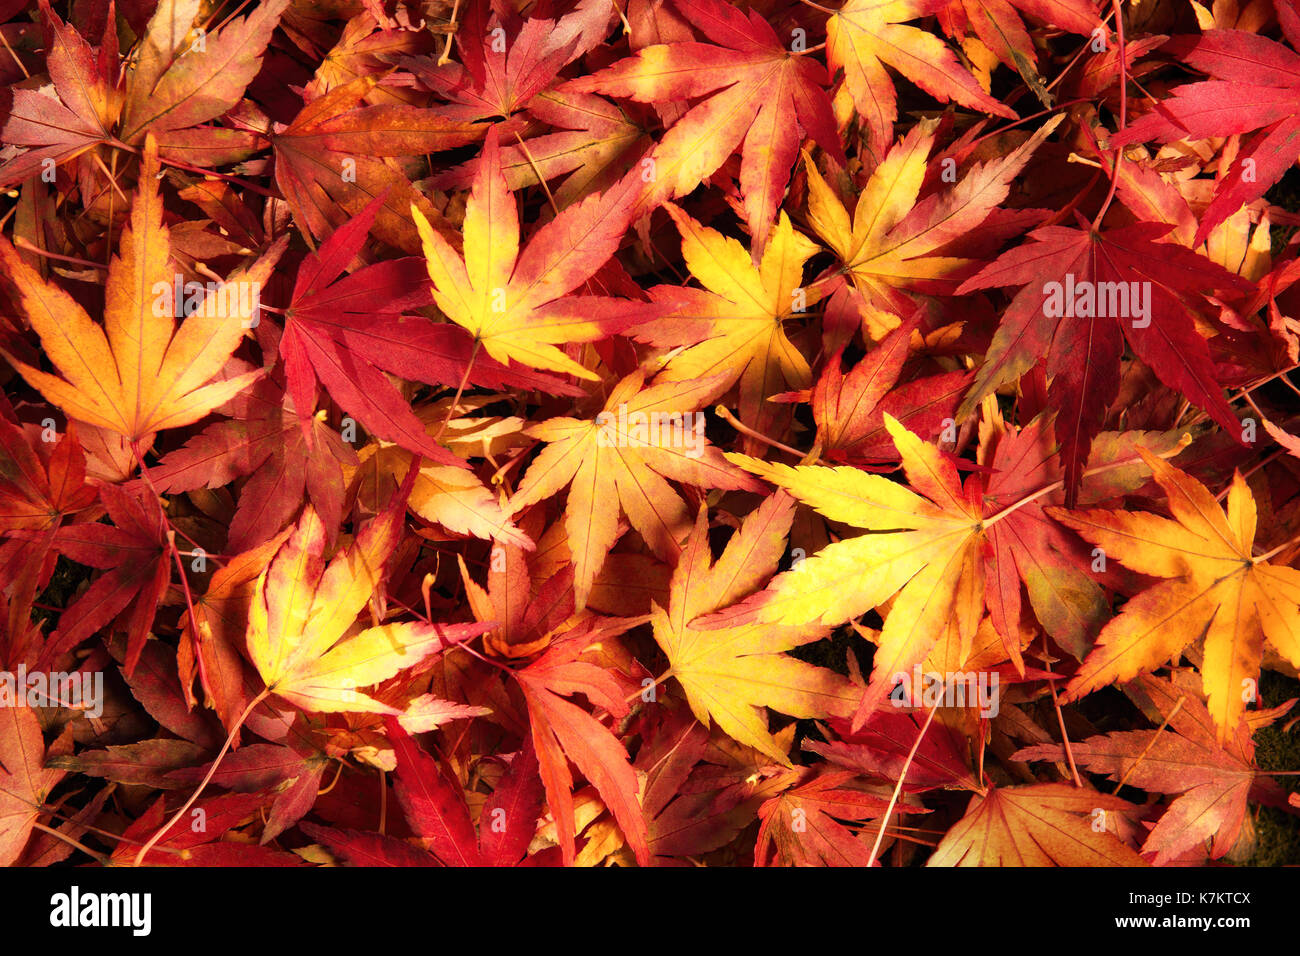 Japanische Ahornblätter in verträumten warmen Farben auf dem Boden liegend, kunstvolle Muster Stockfoto